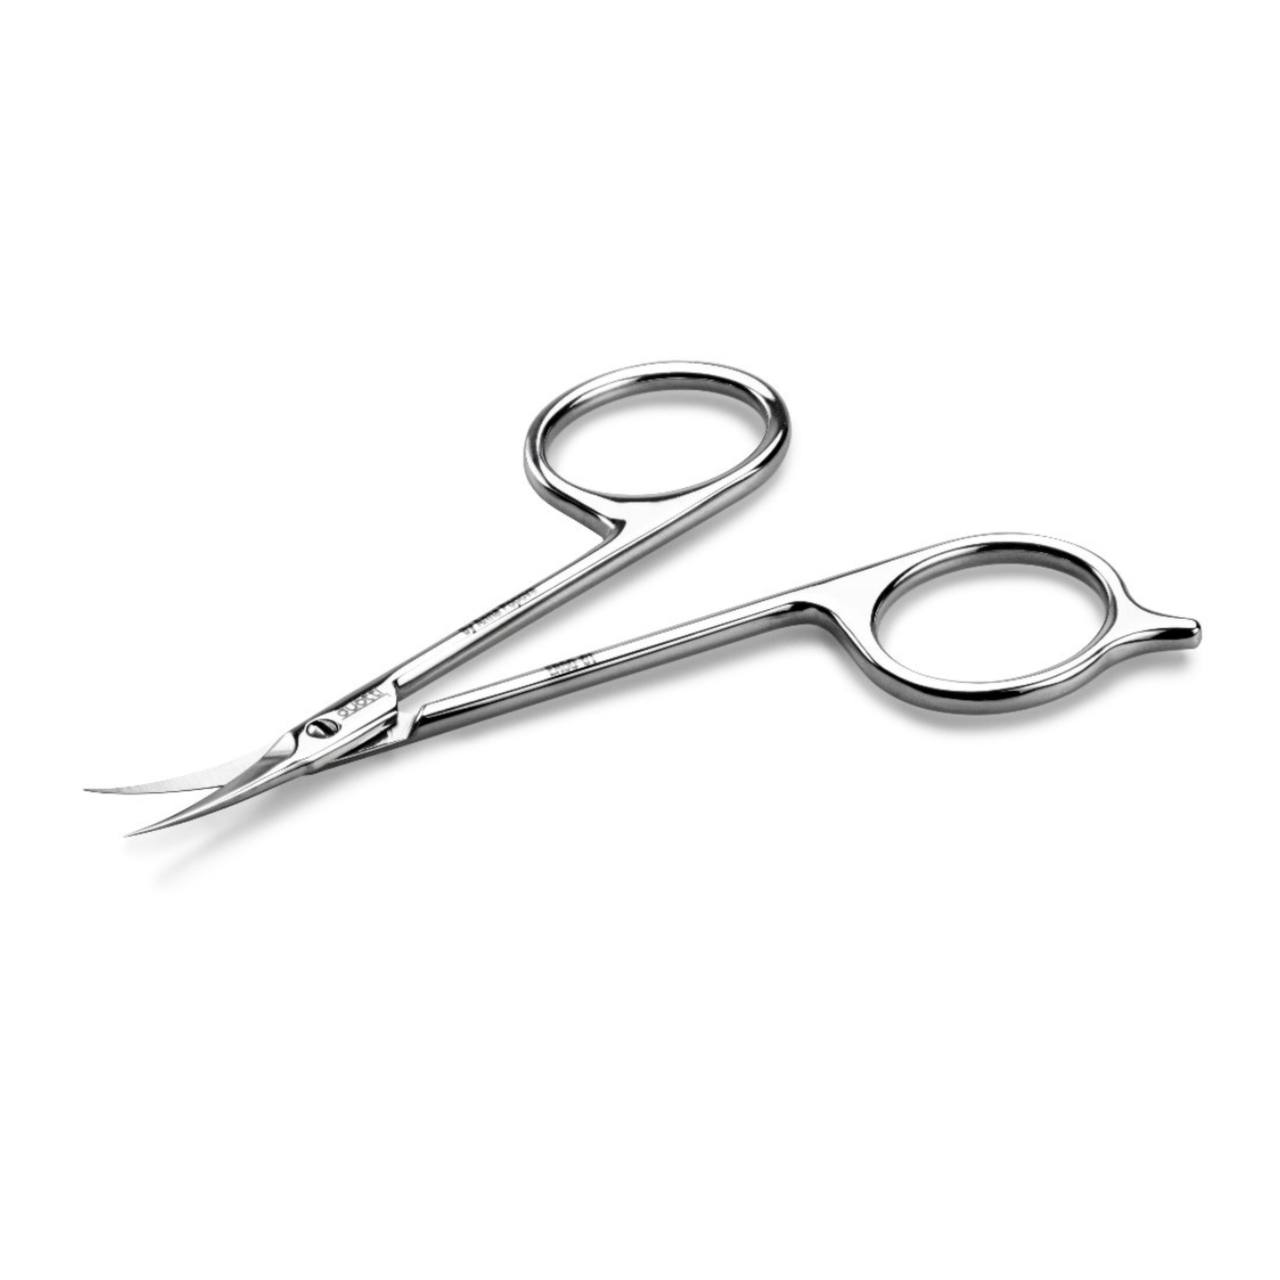 1st Ergonomic Professional Cuticle Scissors